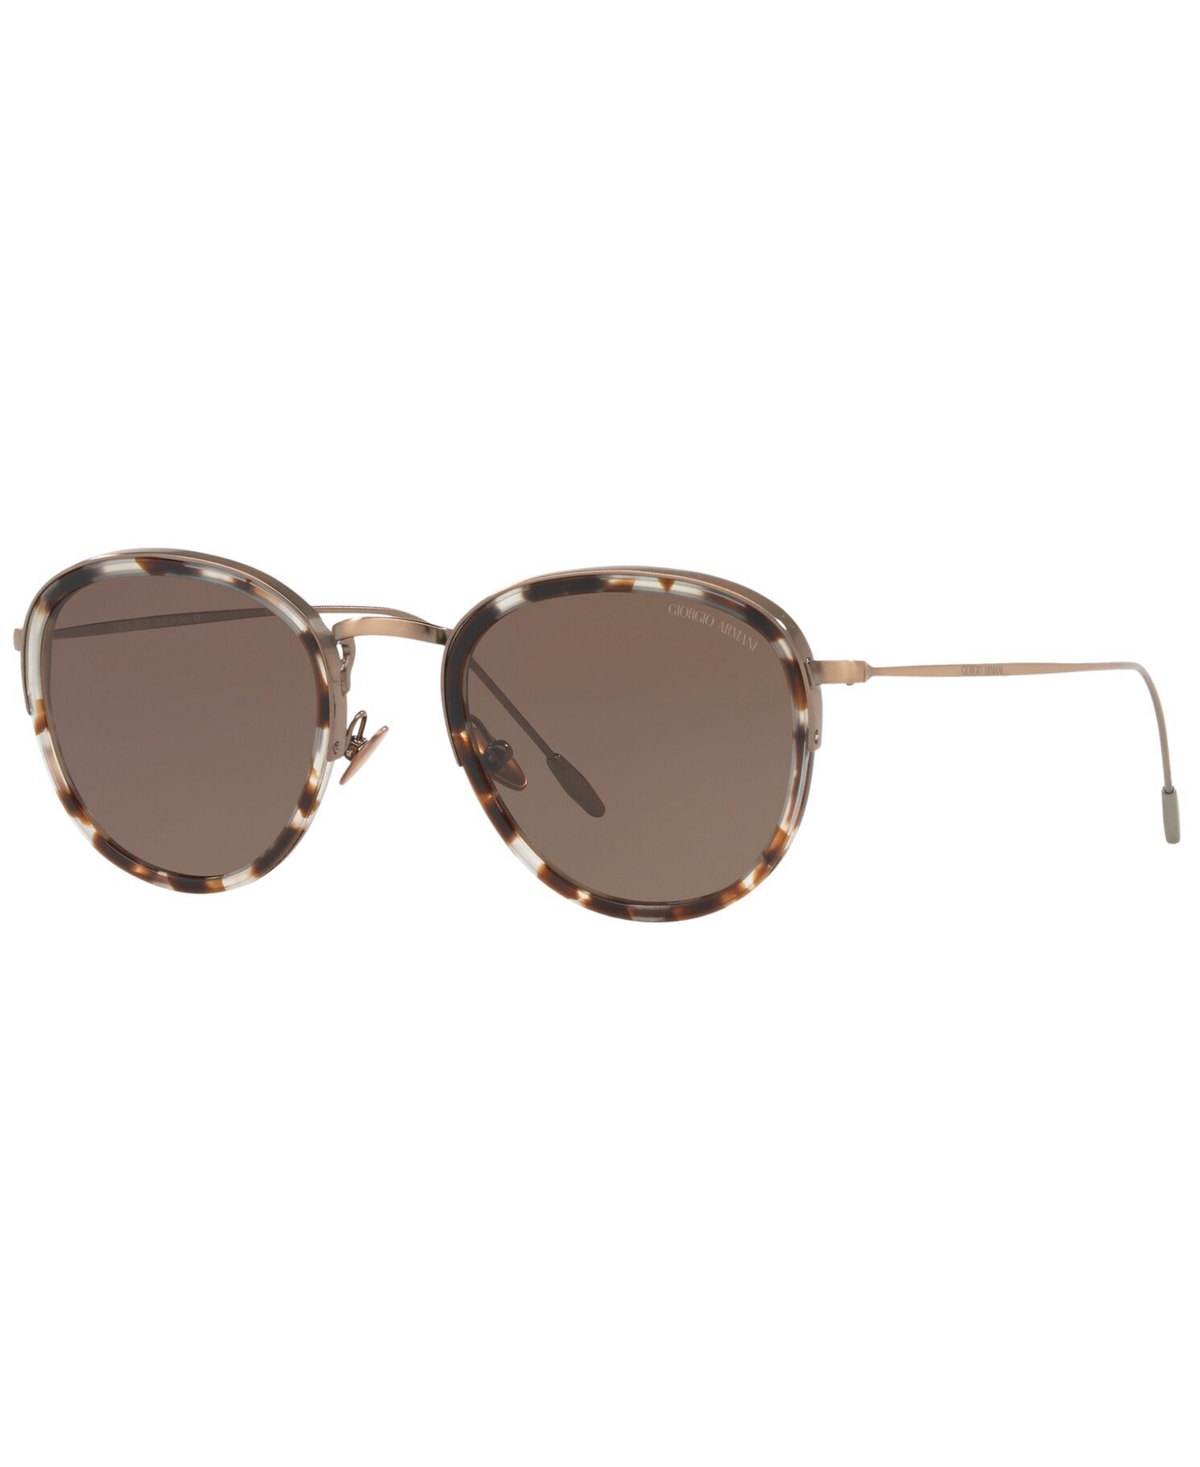 Giorgio Armani Men's Sunglasses In Brown